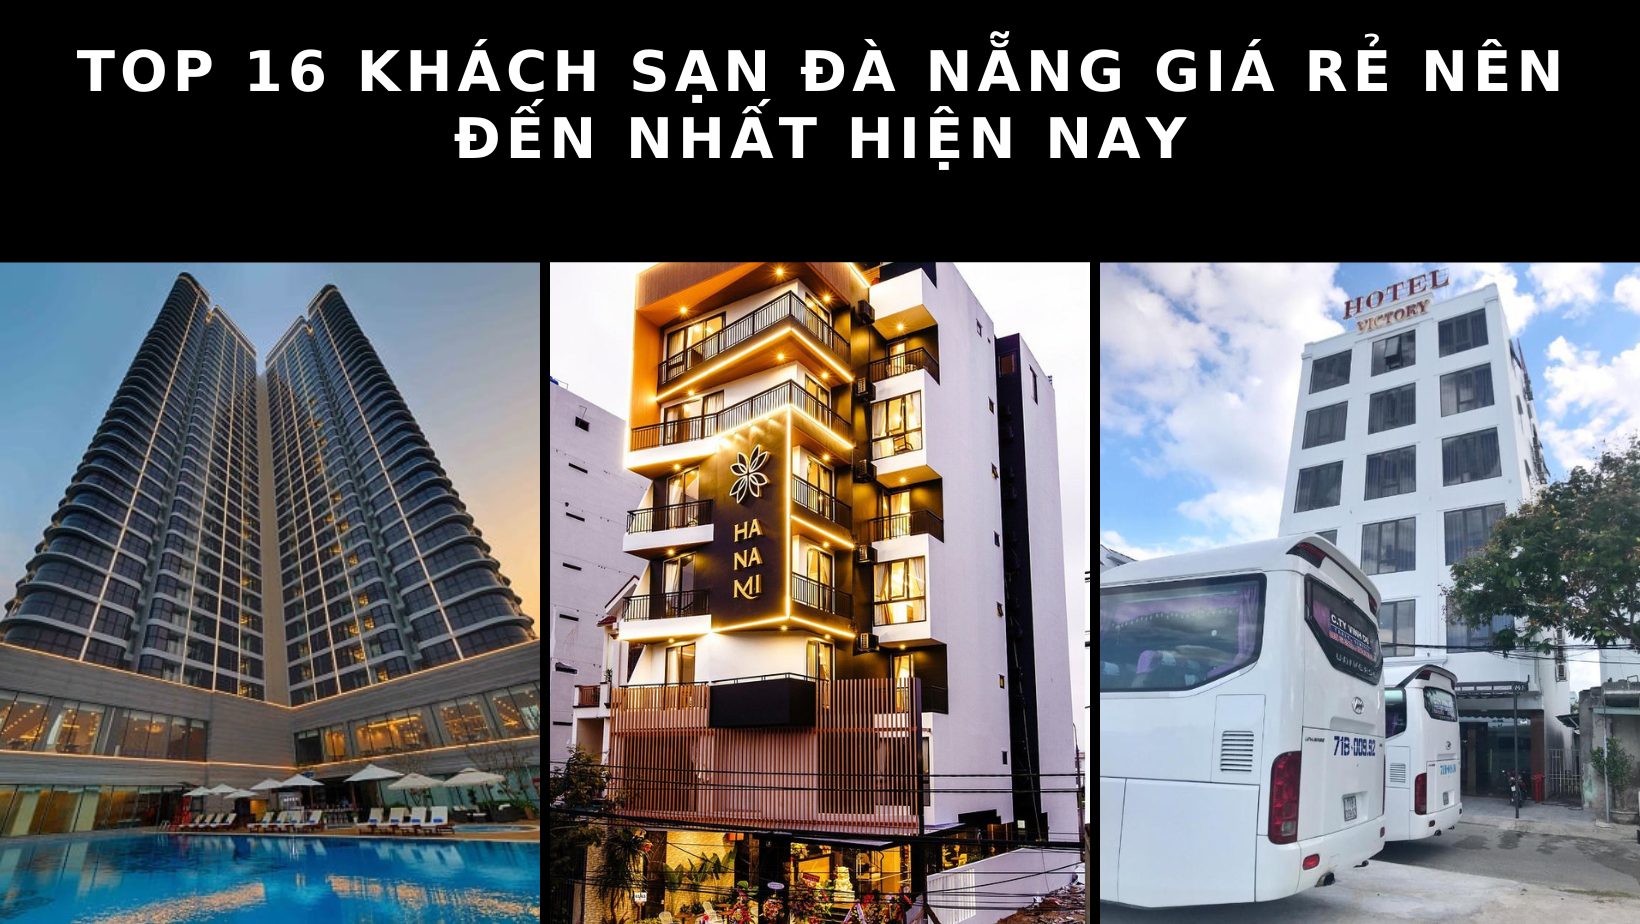 Top 16 khách sạn Đà Nẵng giá rẻ nên đến nhất hiện nay